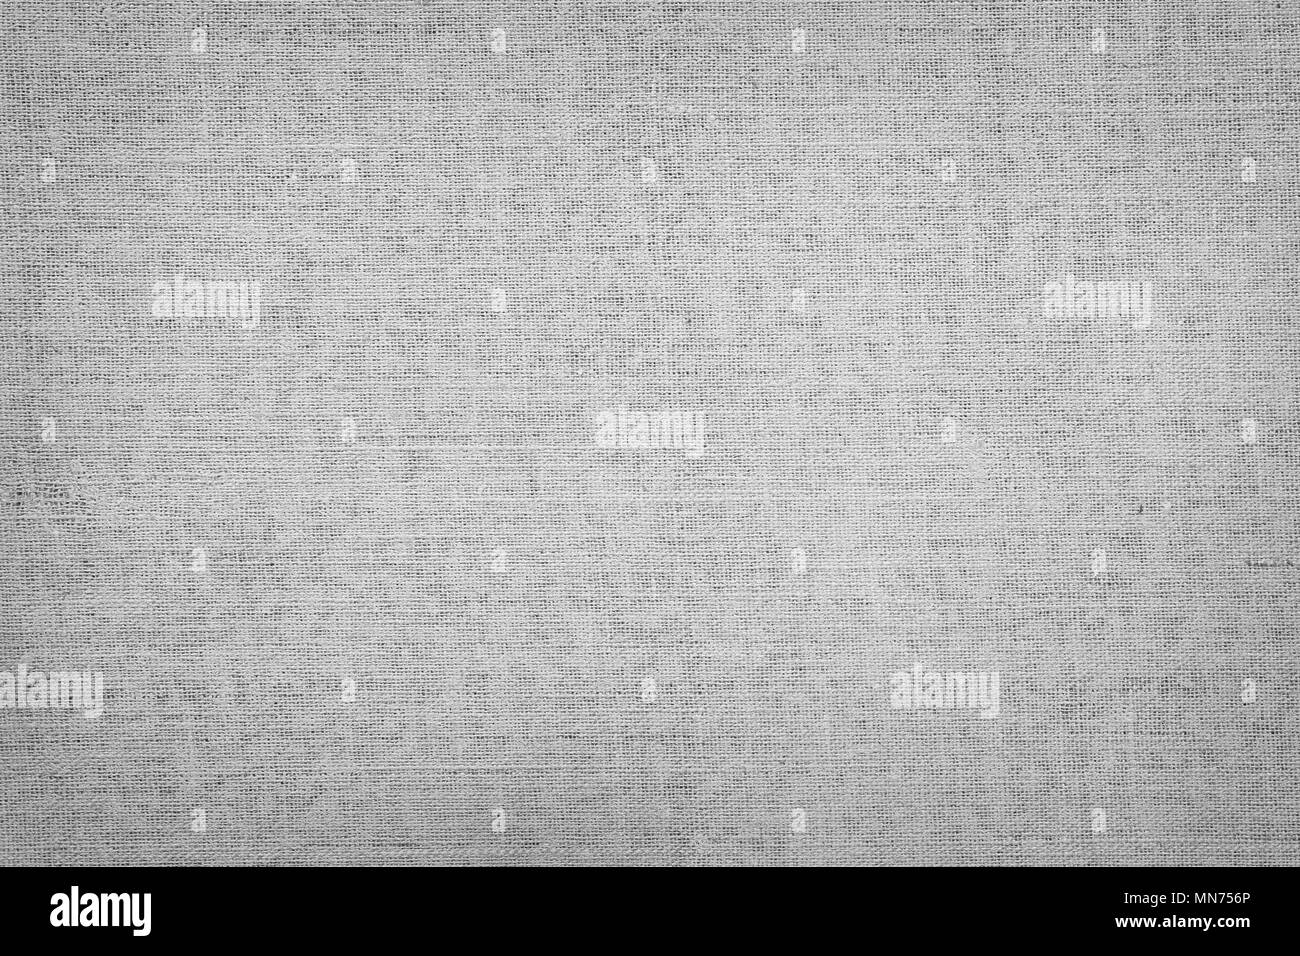 Closeup of grey canvas texture Stock Photo - Alamy